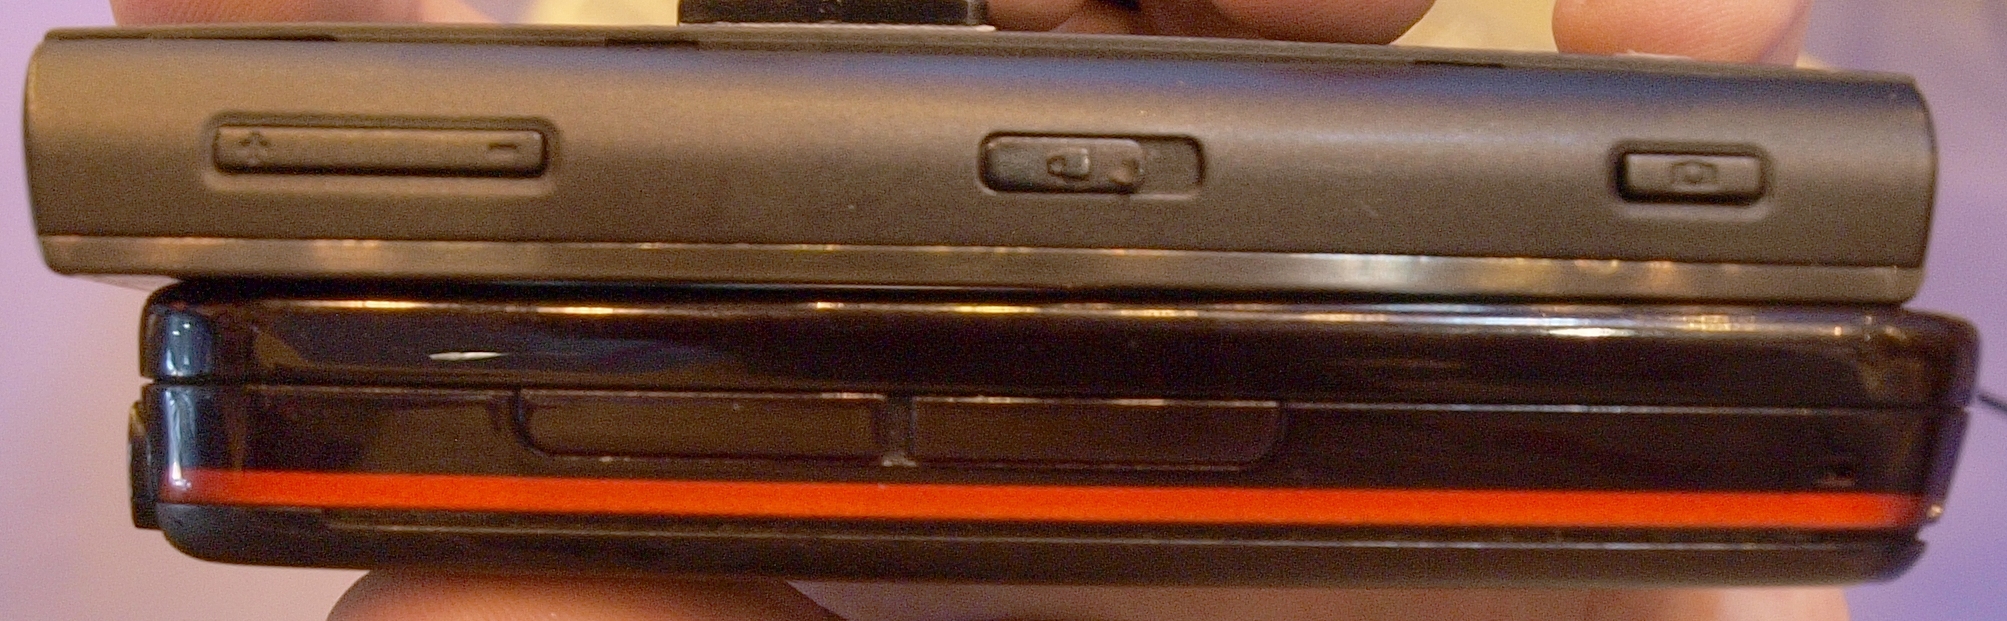 Nokia X 5800